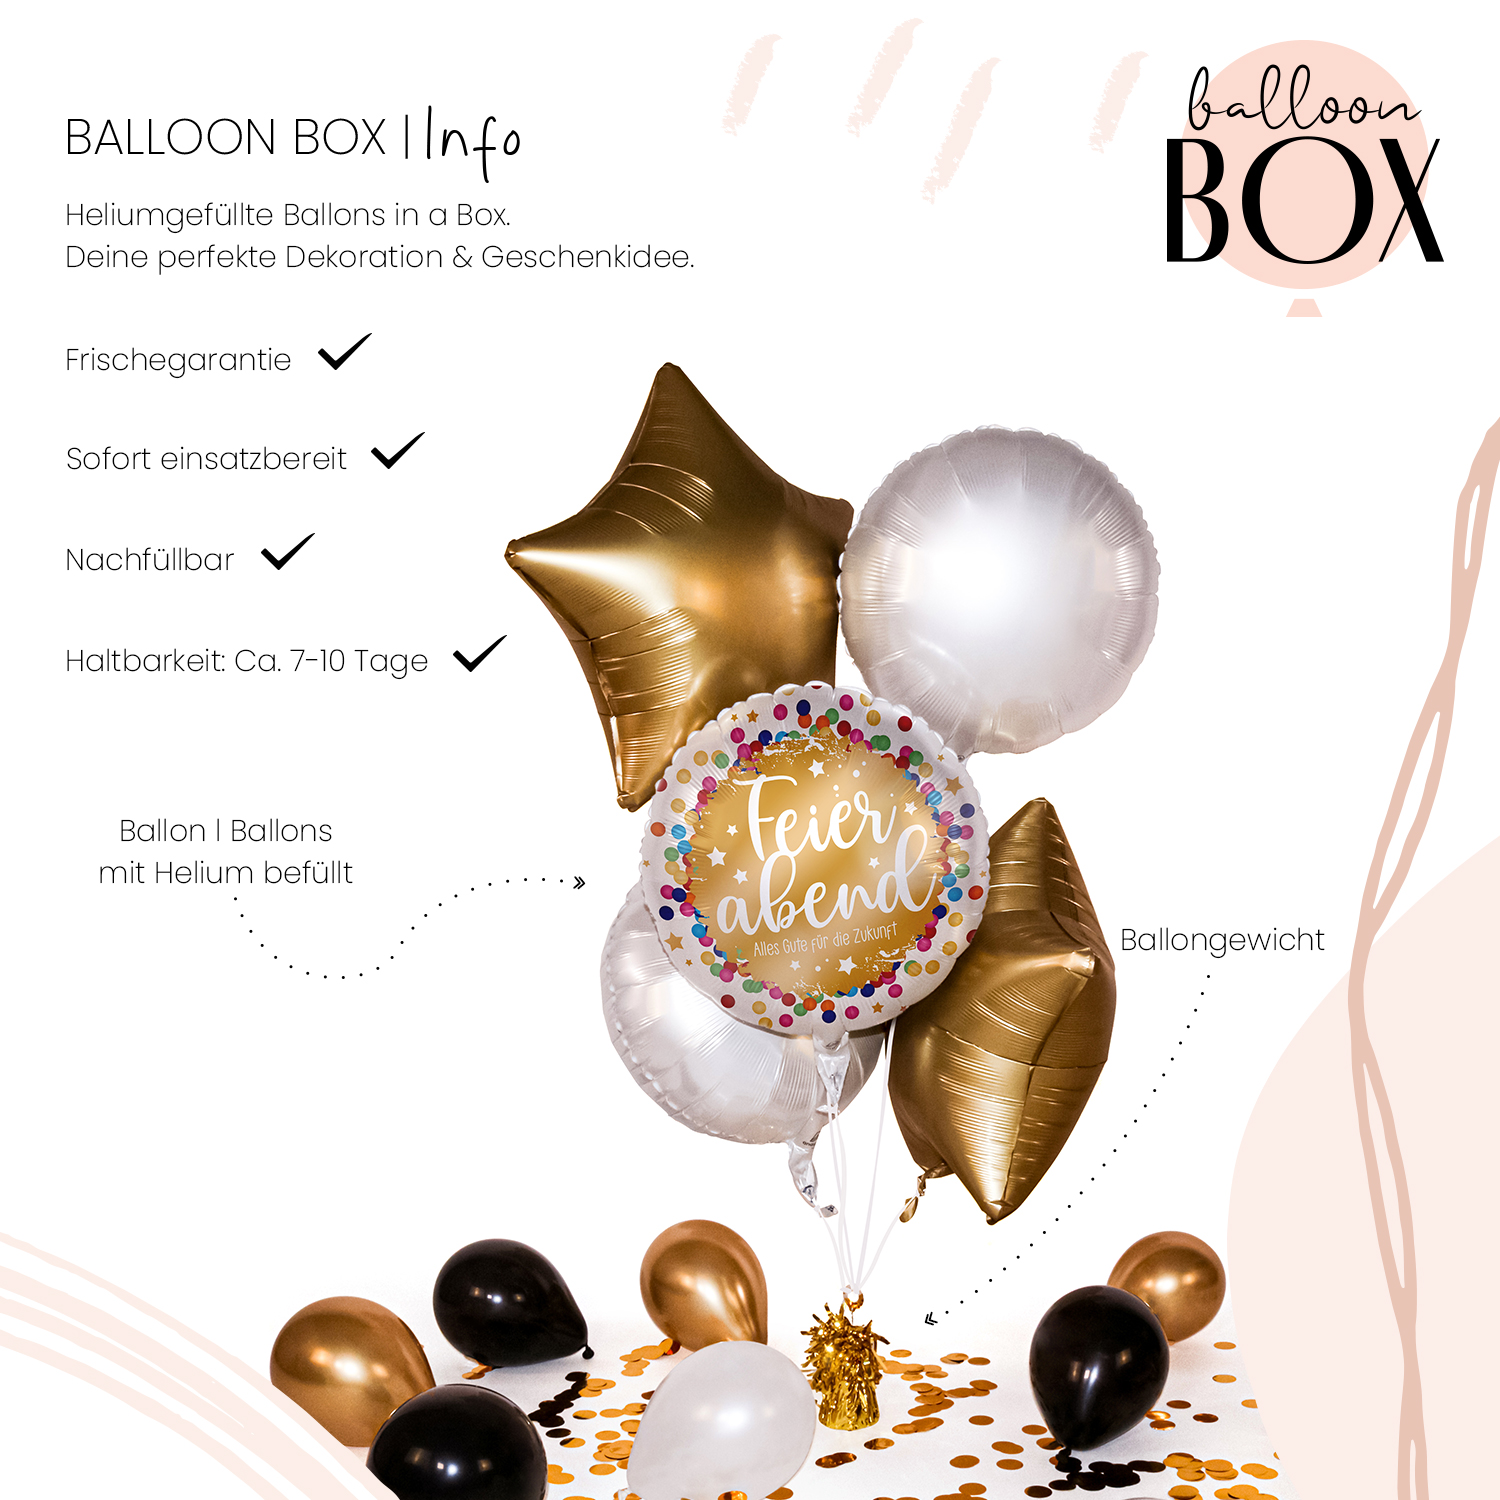 Heliumballon in a Box - Feierabend Konfetti